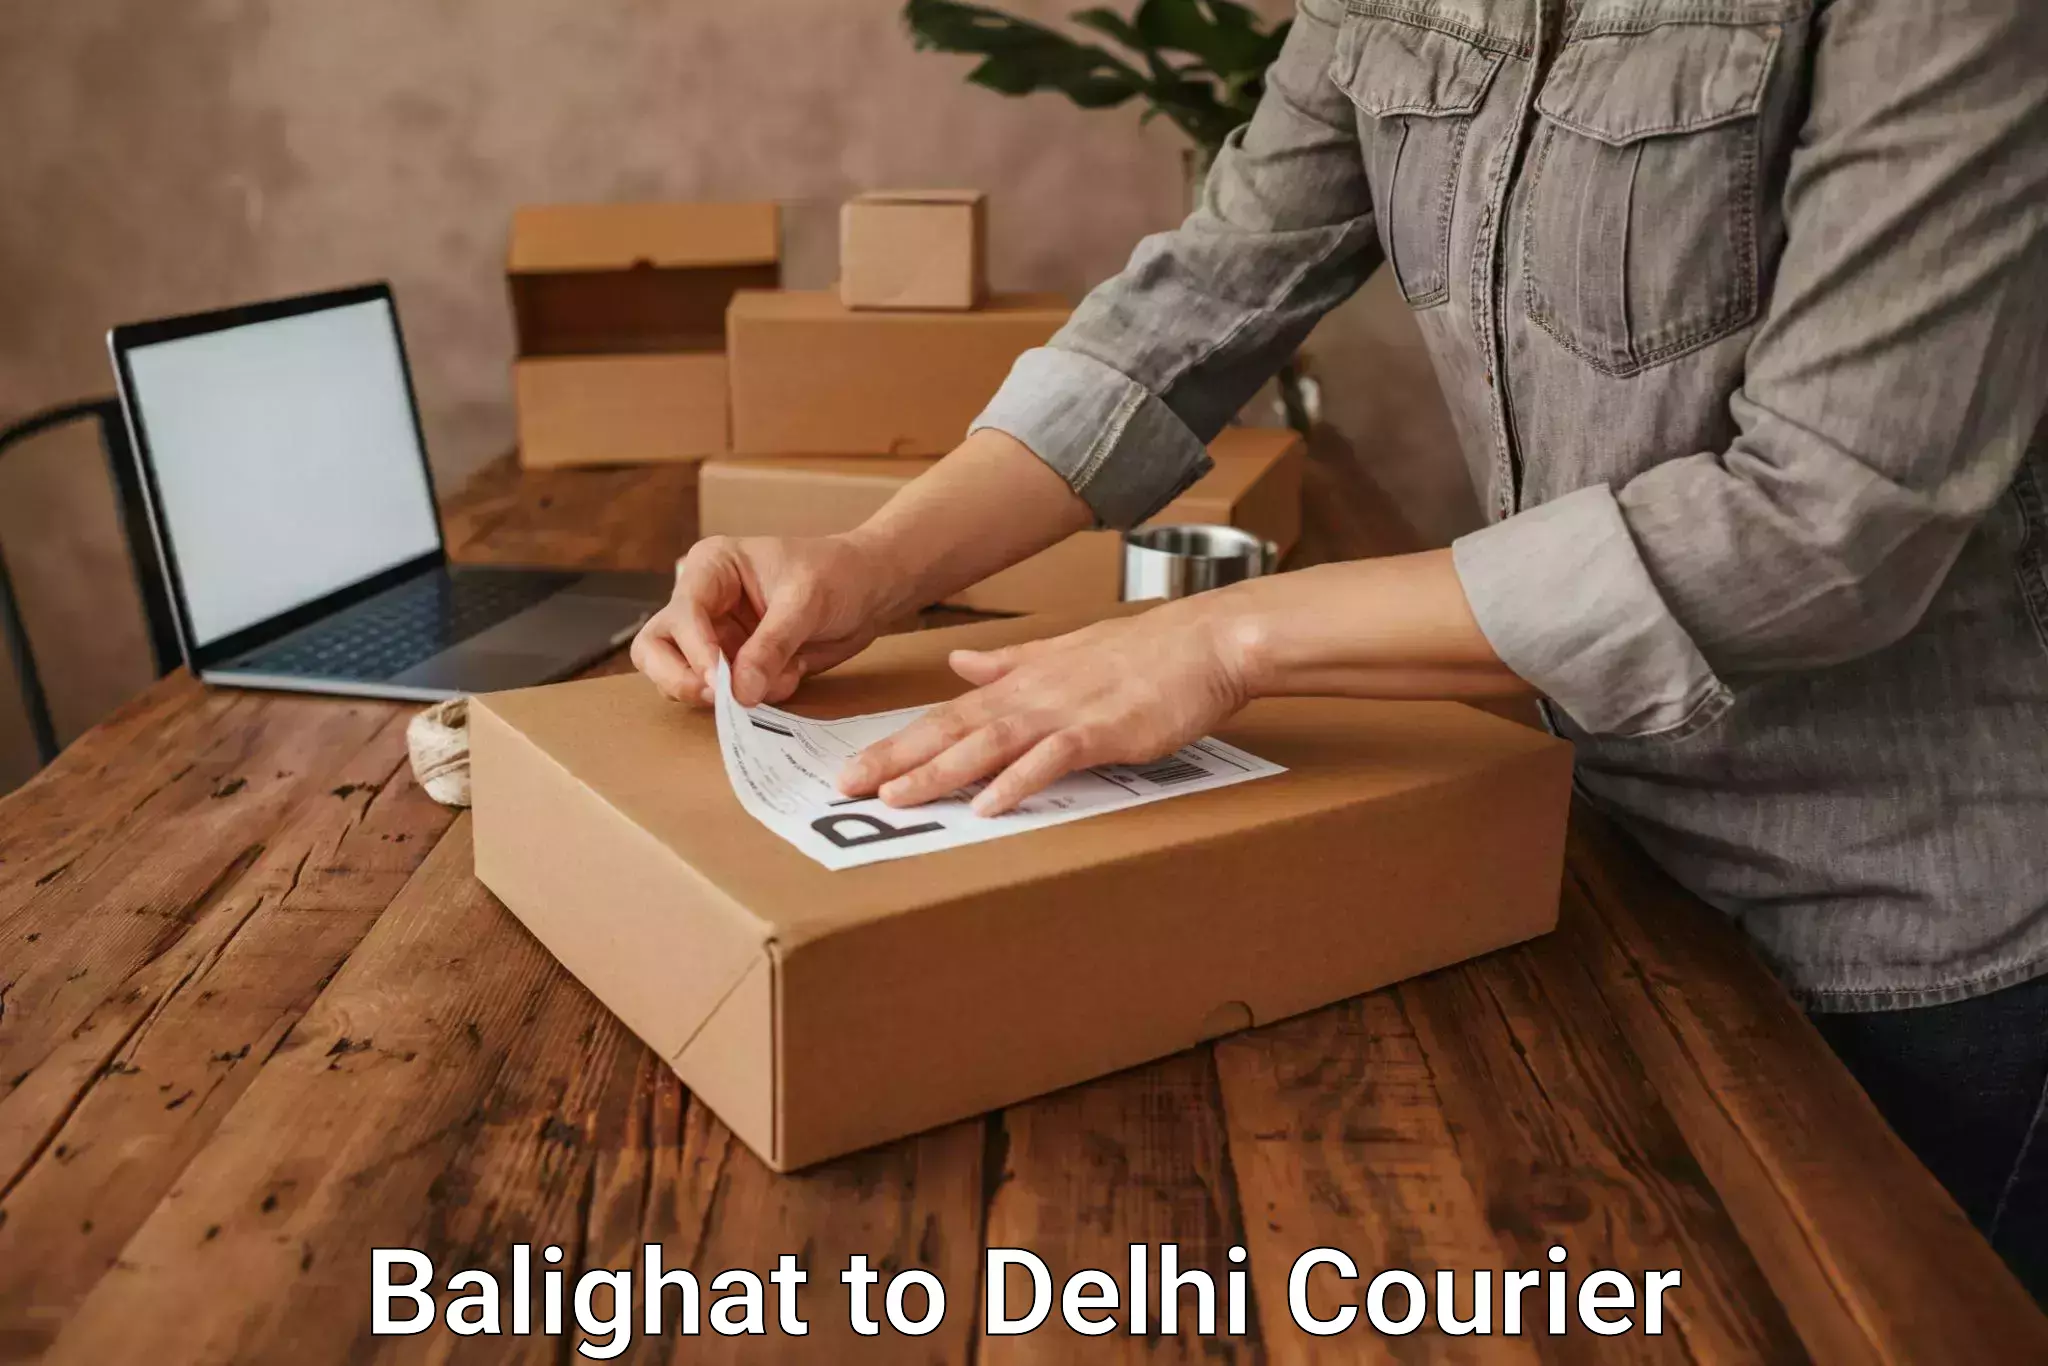 Flexible delivery schedules Balighat to IIT Delhi